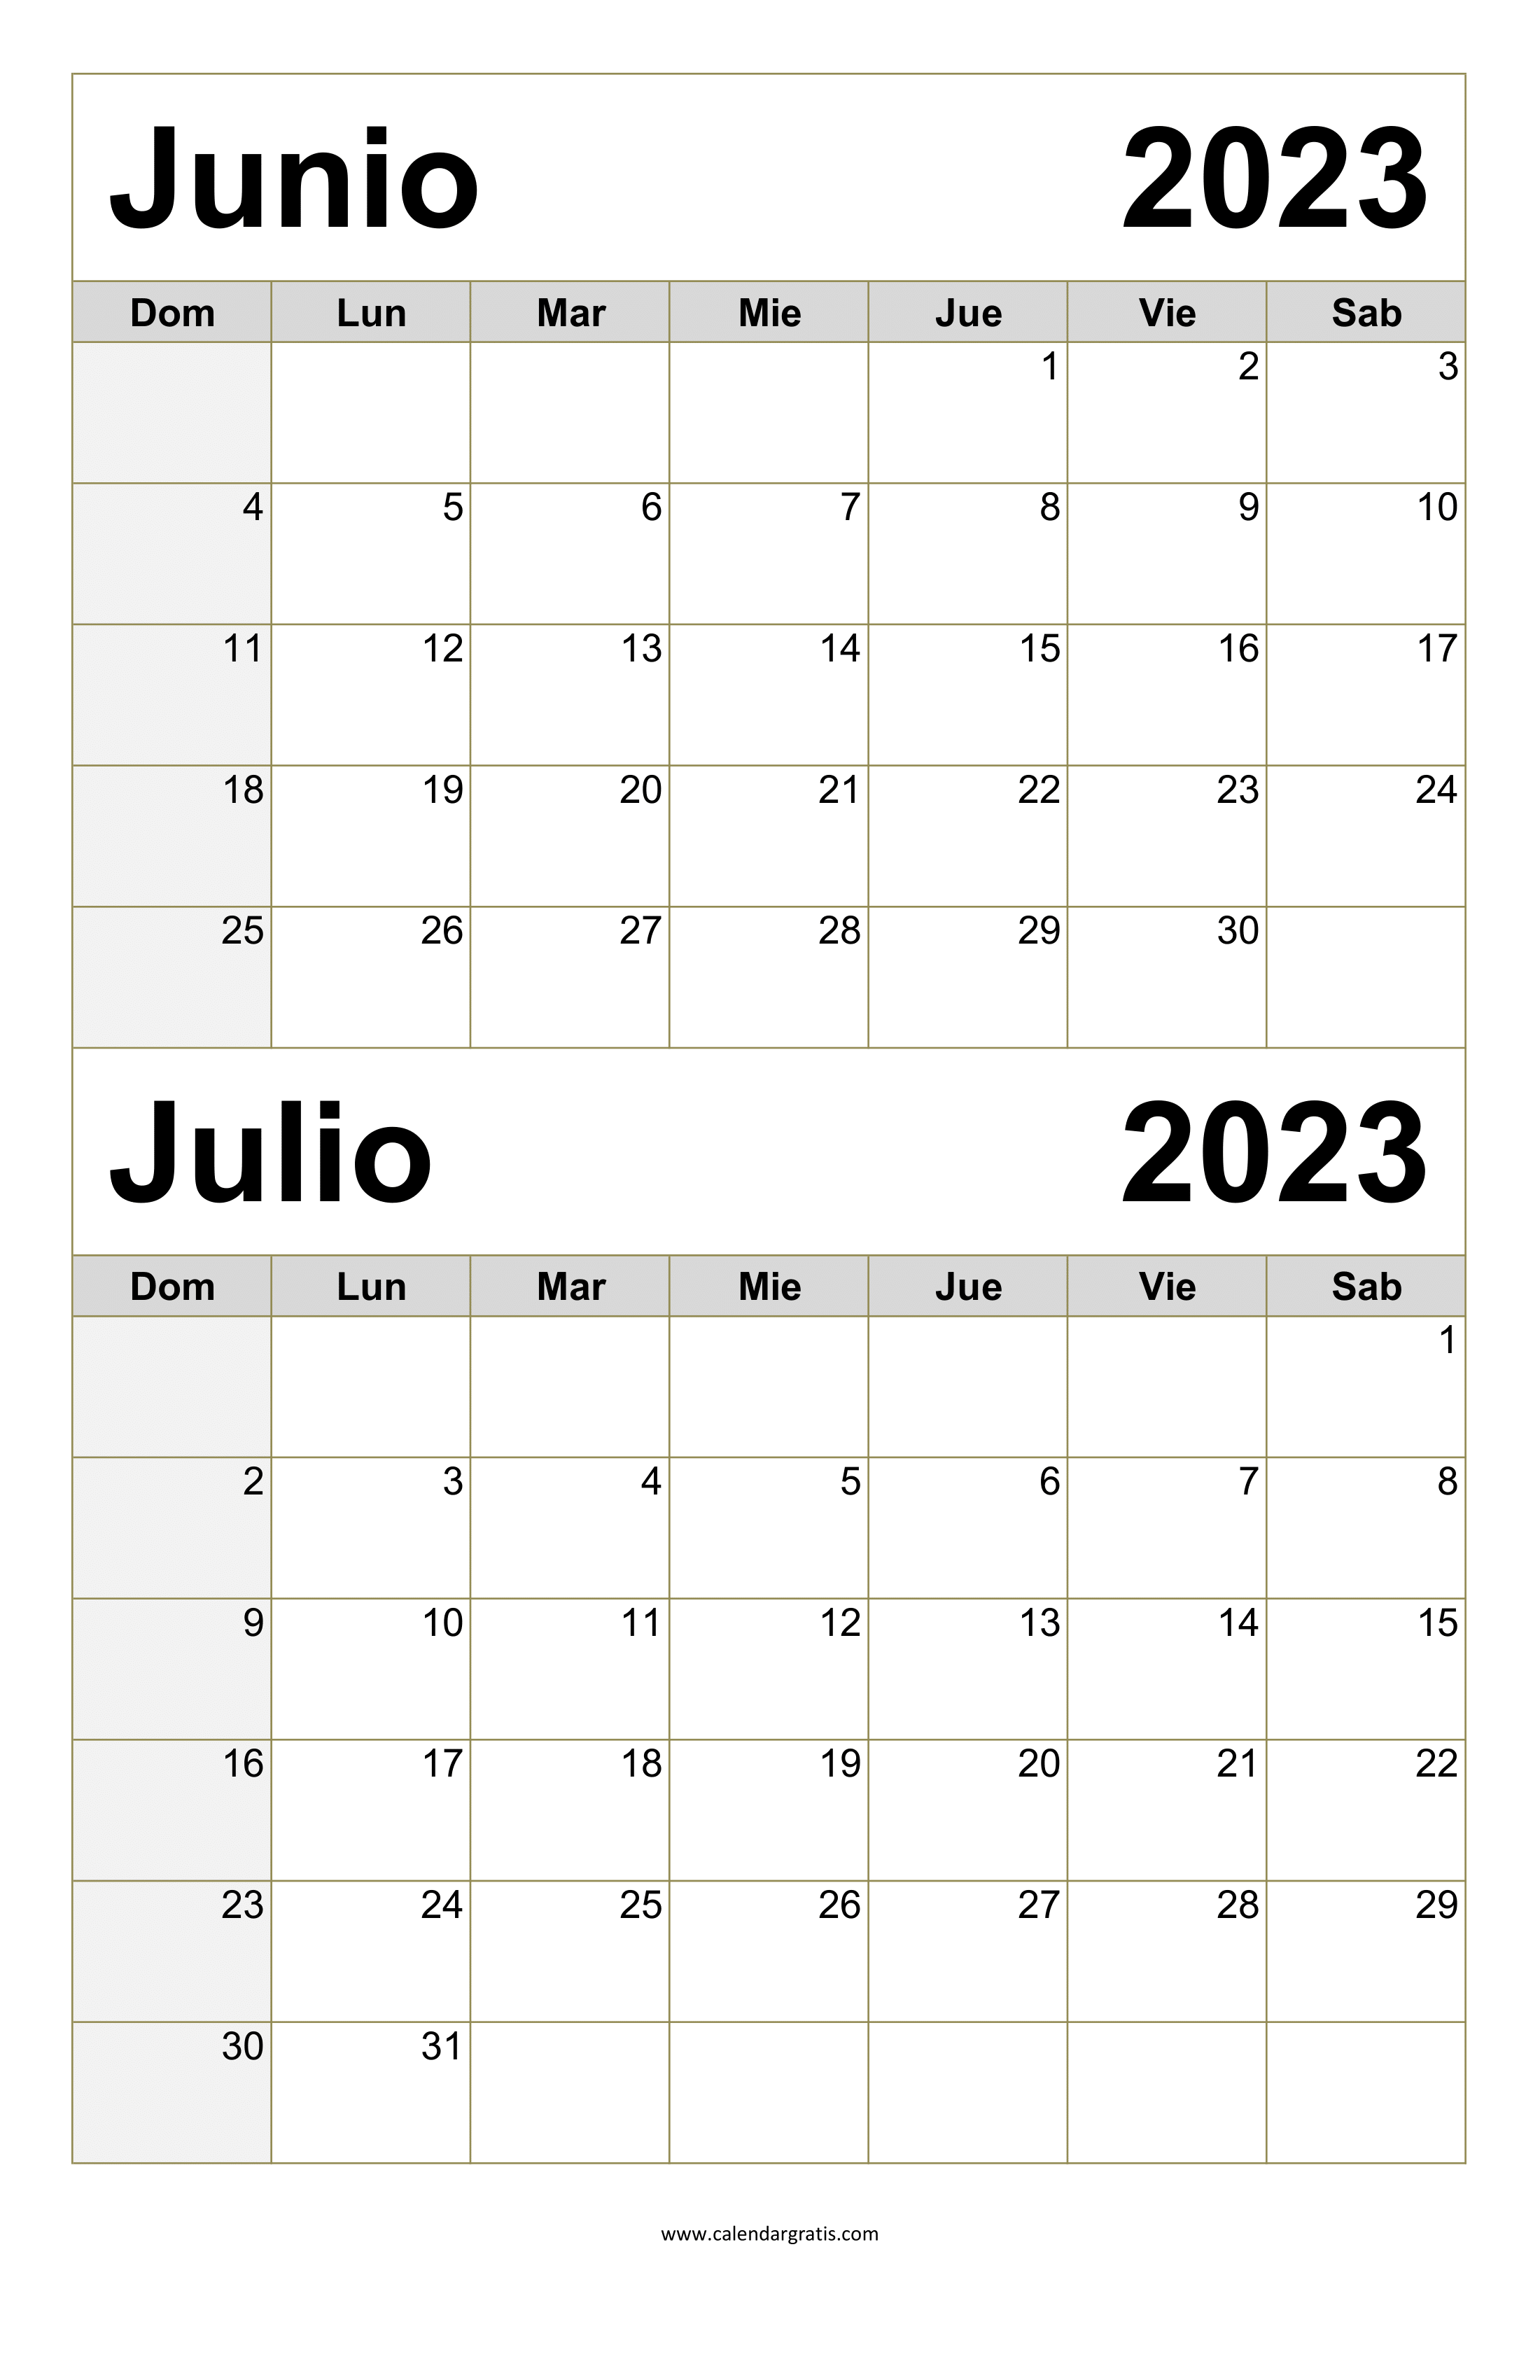 Calendario Junio Julio 2023 Para Imprimir